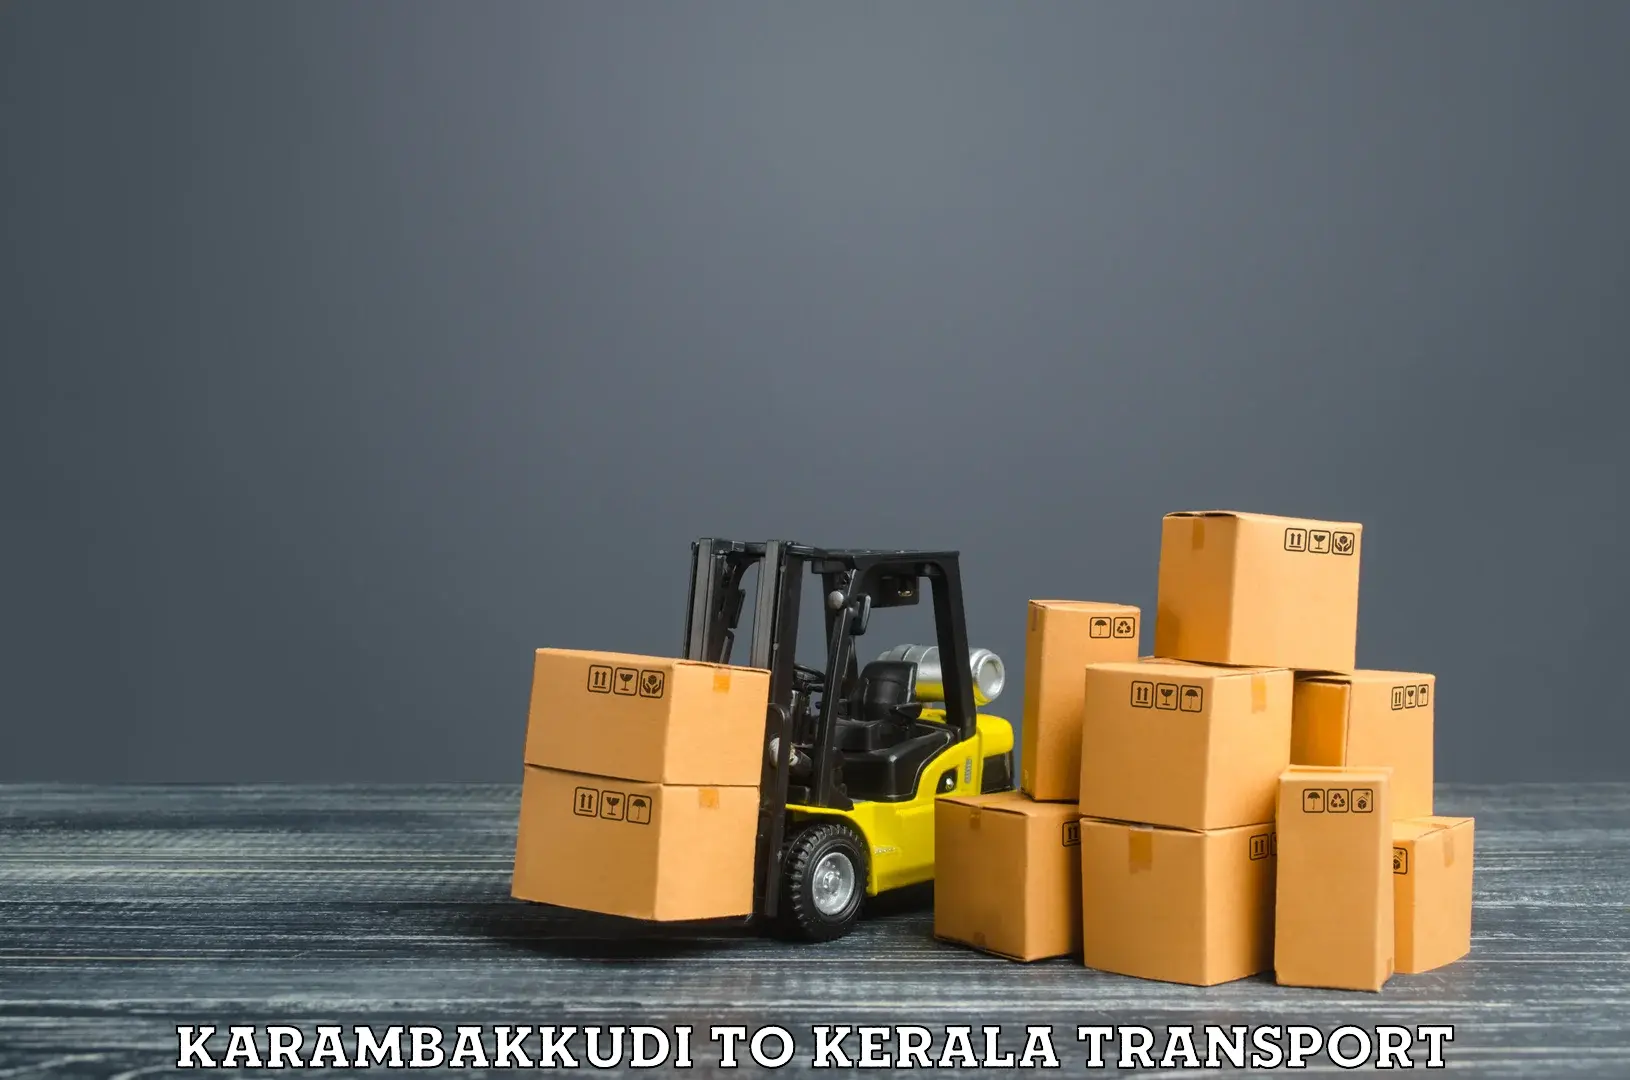 Two wheeler parcel service Karambakkudi to Alappuzha